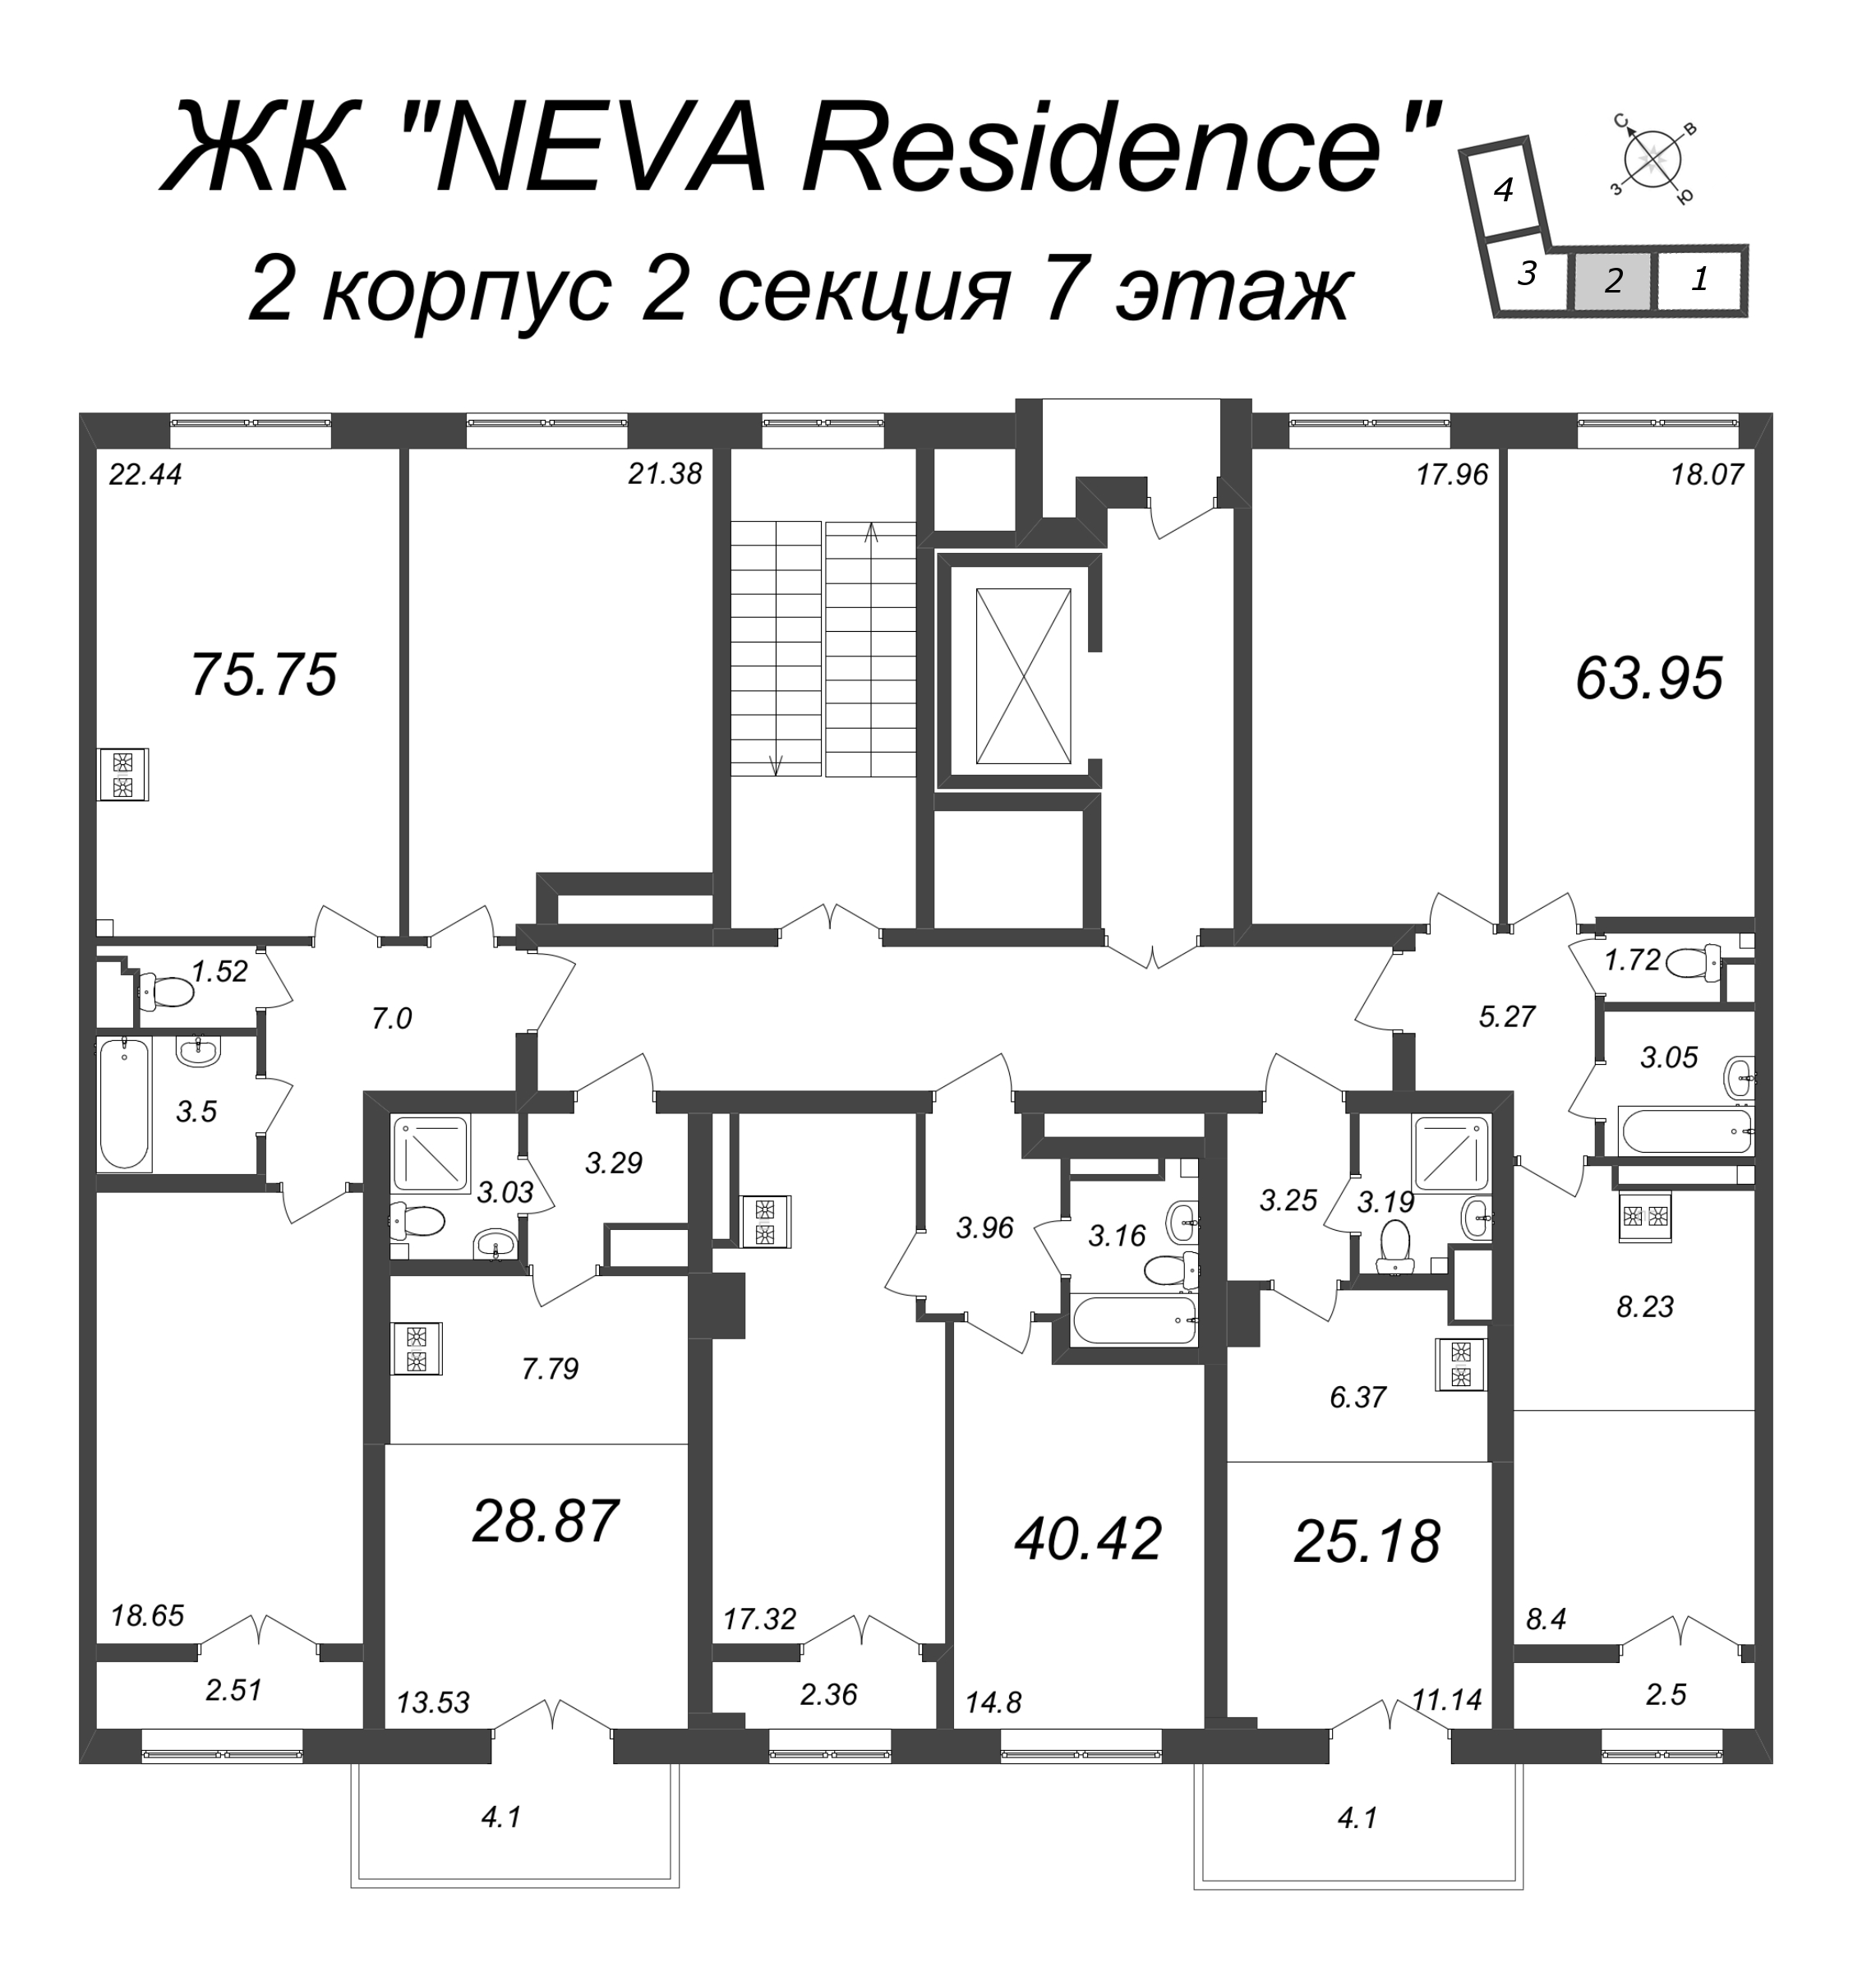 Квартира-студия, 25.18 м² в ЖК "Neva Residence" - планировка этажа